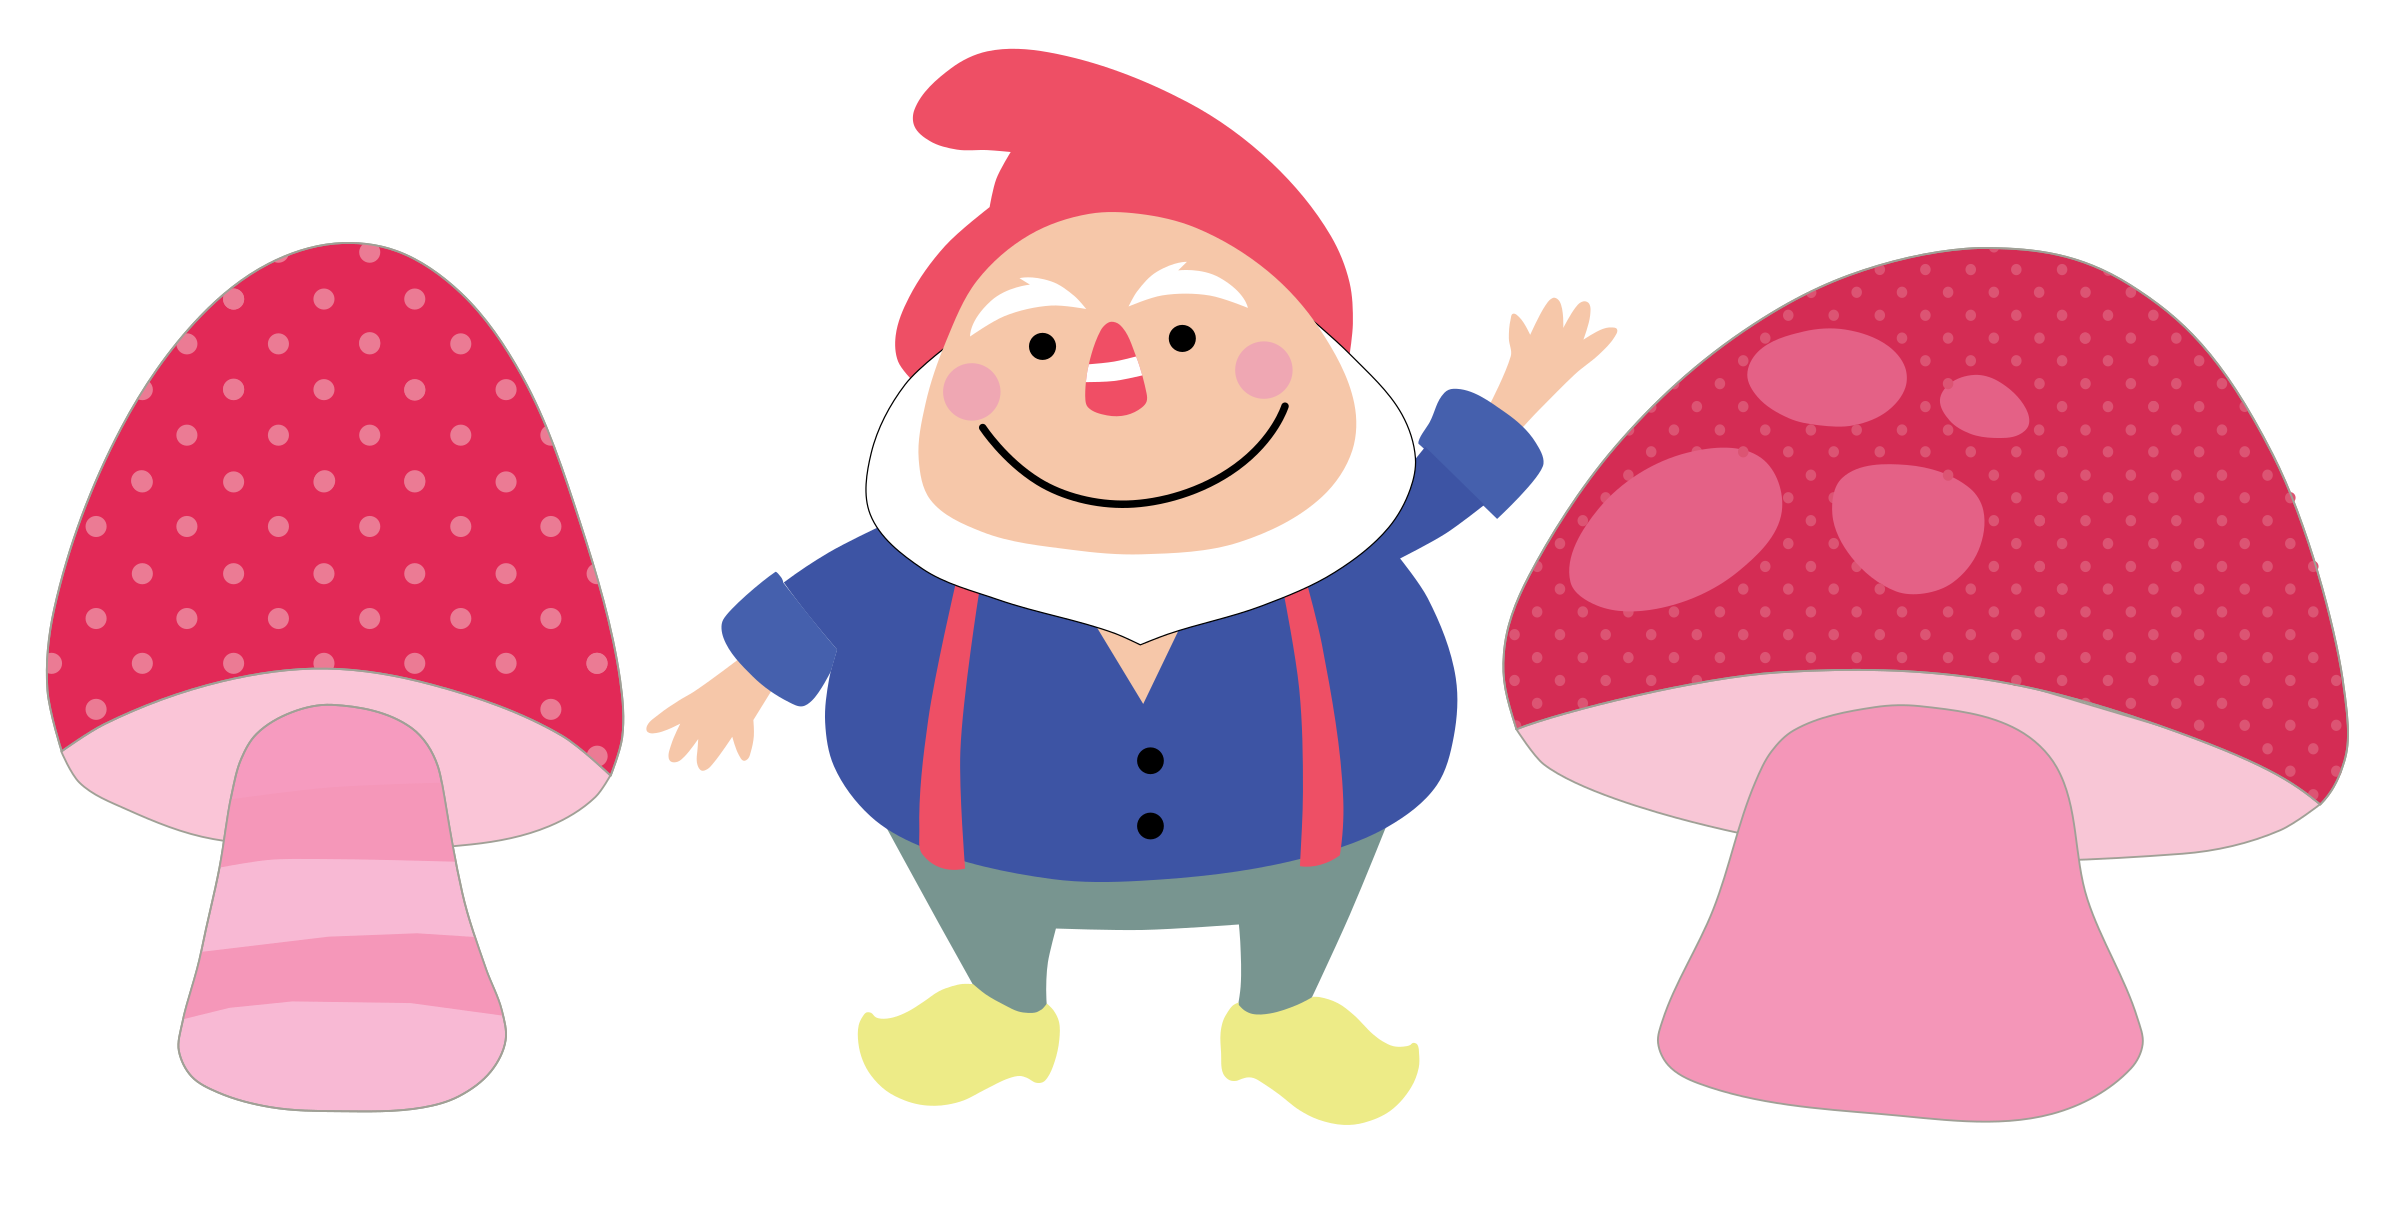 Mushrooms clipart cartoon character. Gnome small mushroom free